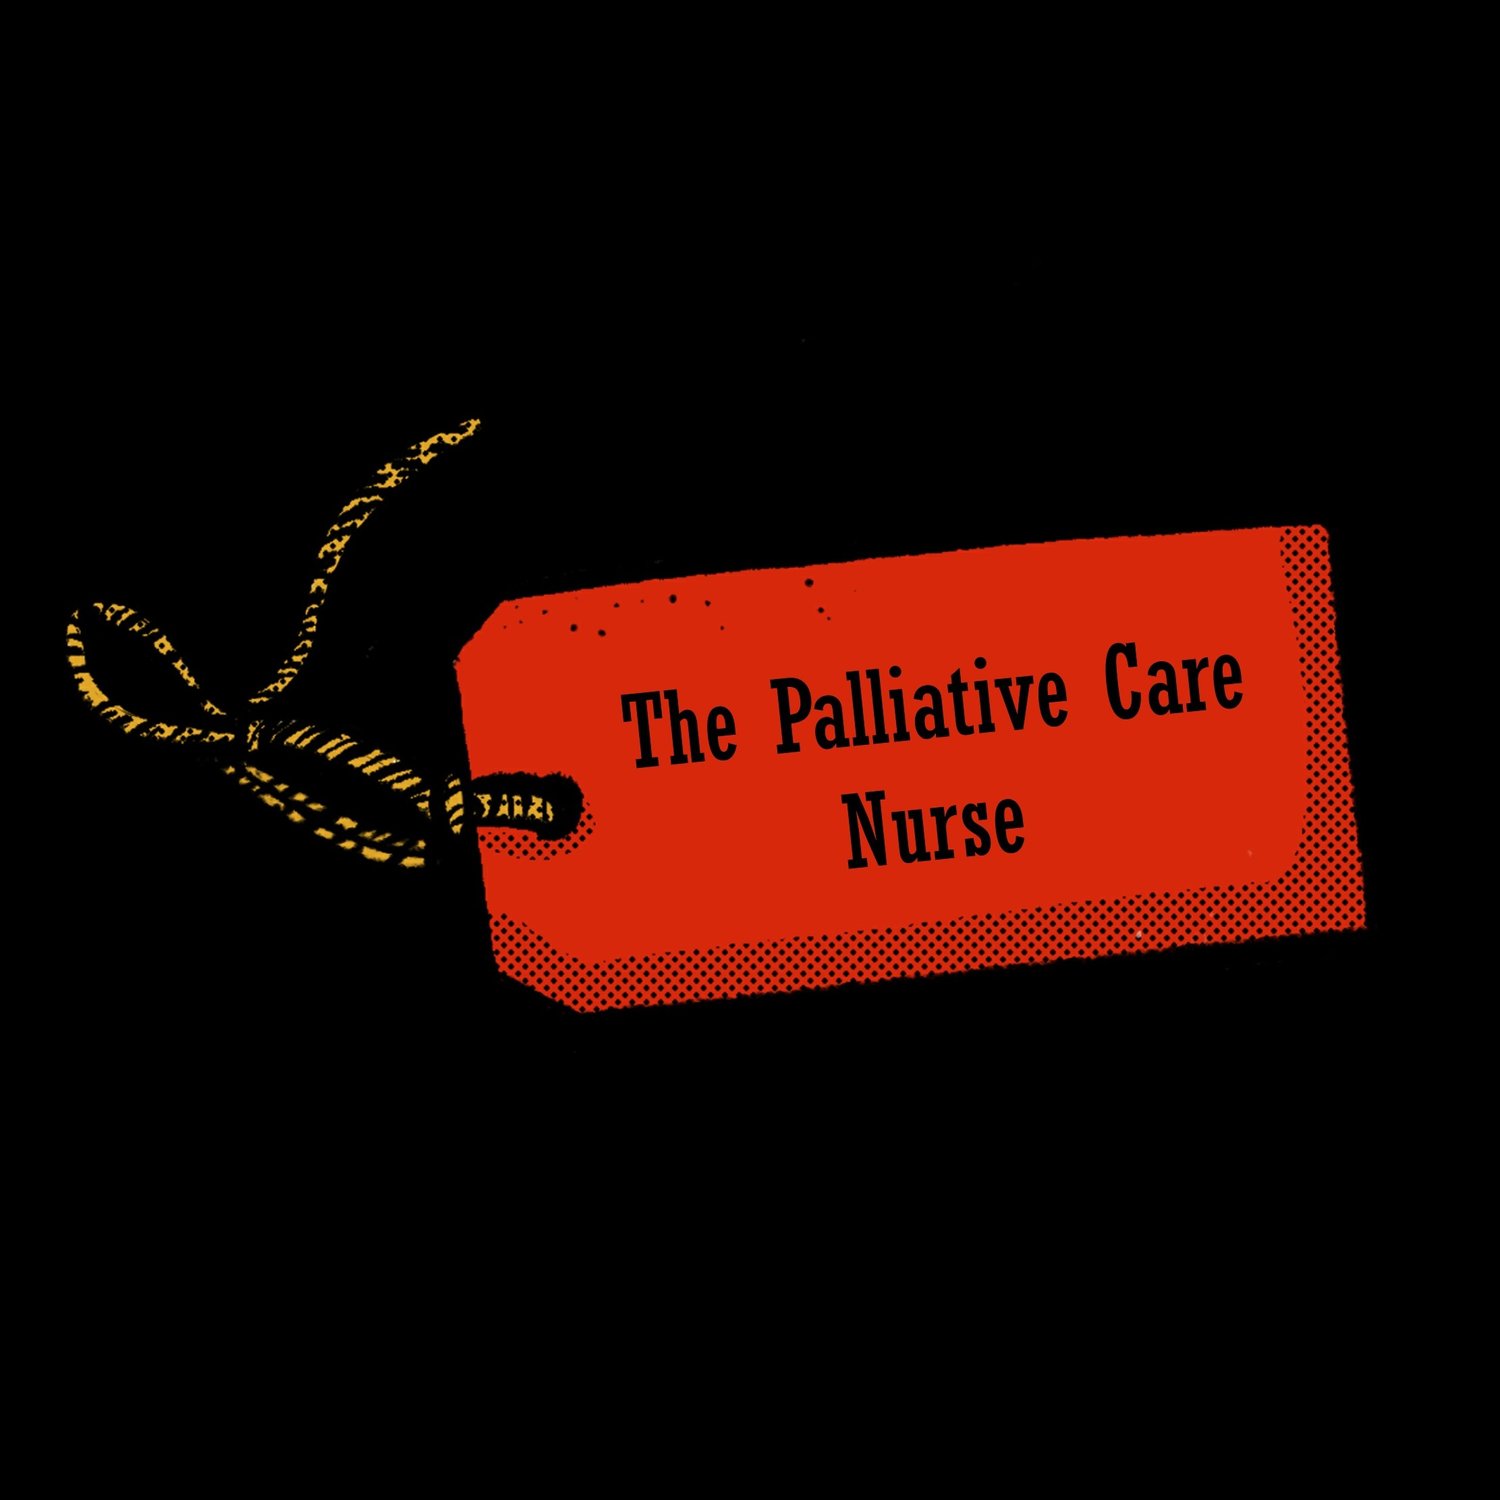 Episode 12: The Palliative Care Nurse